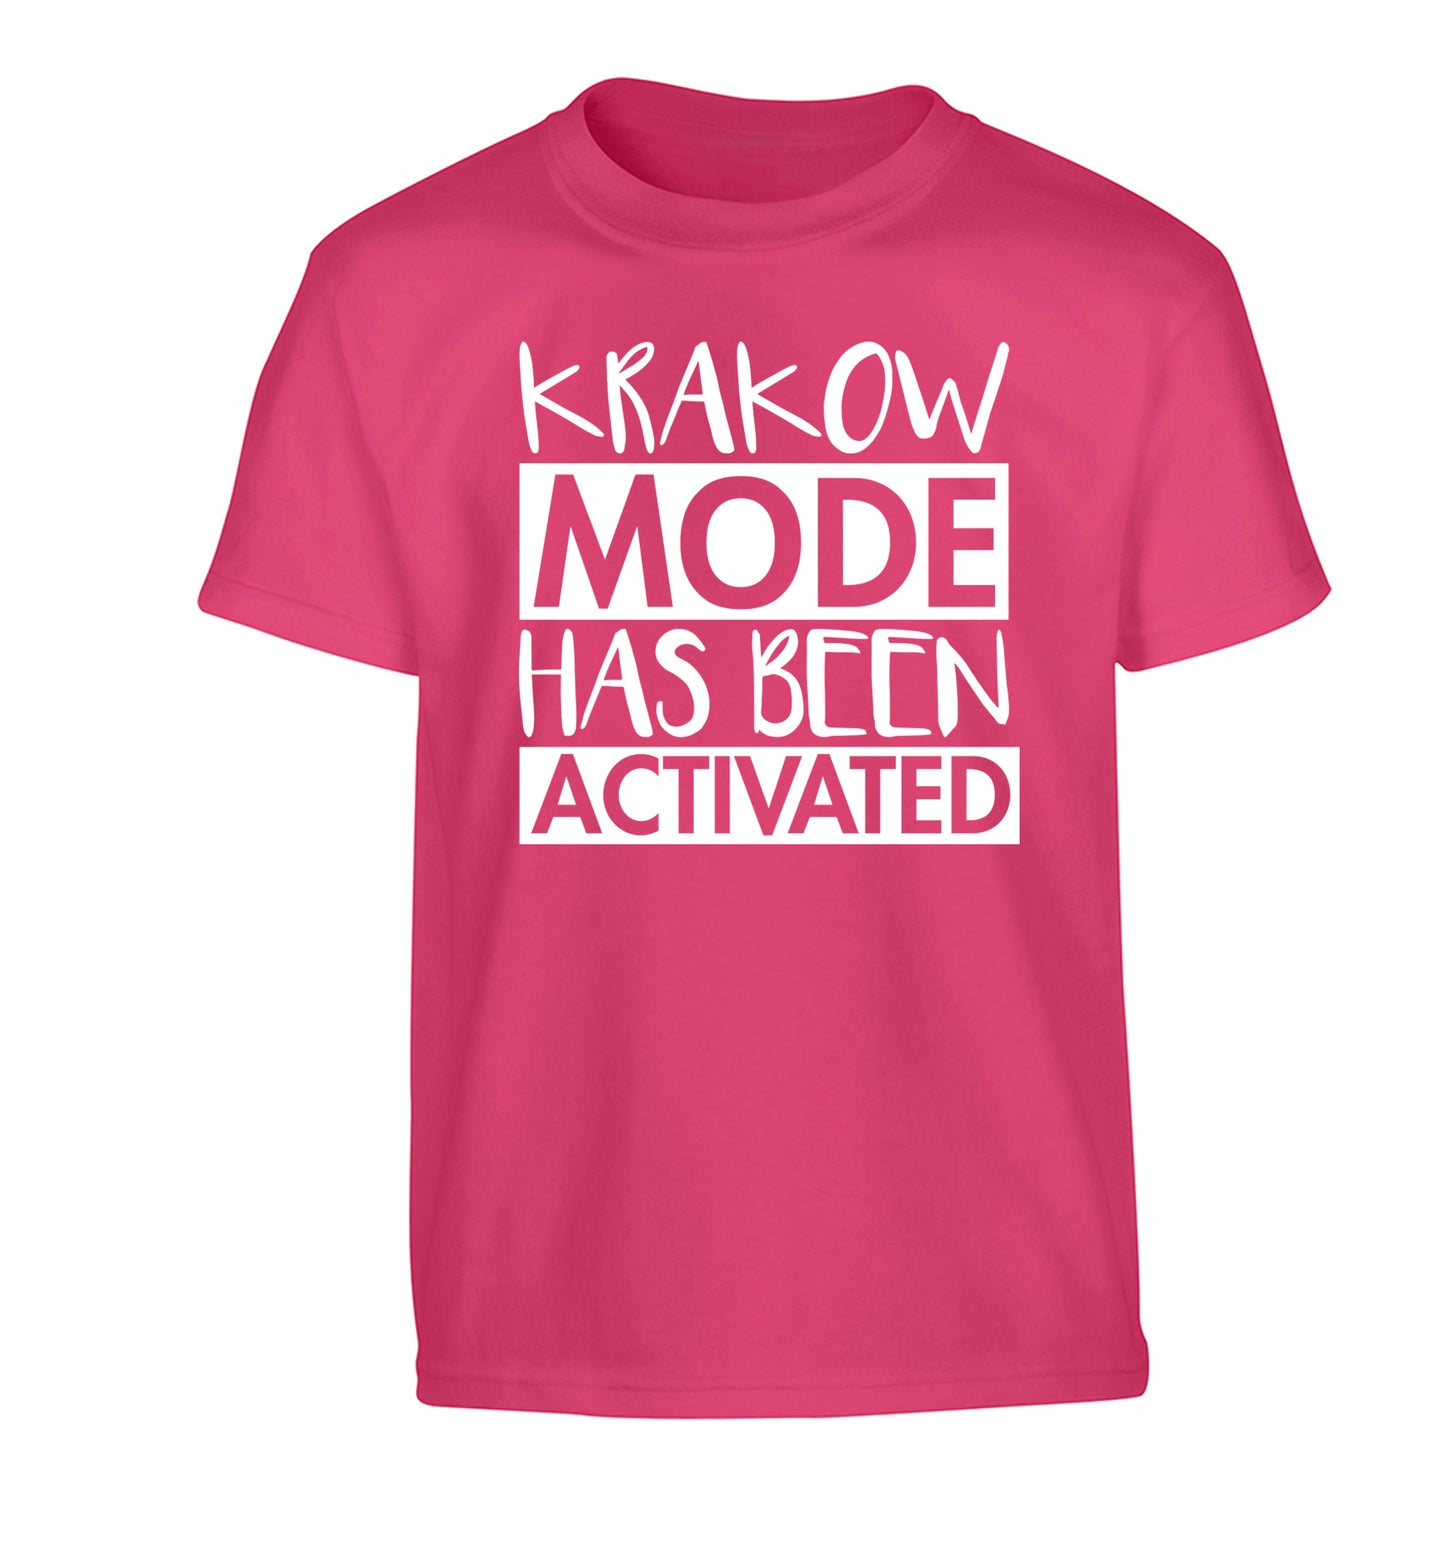 Krakow mode has been activated Children's pink Tshirt 12-13 Years